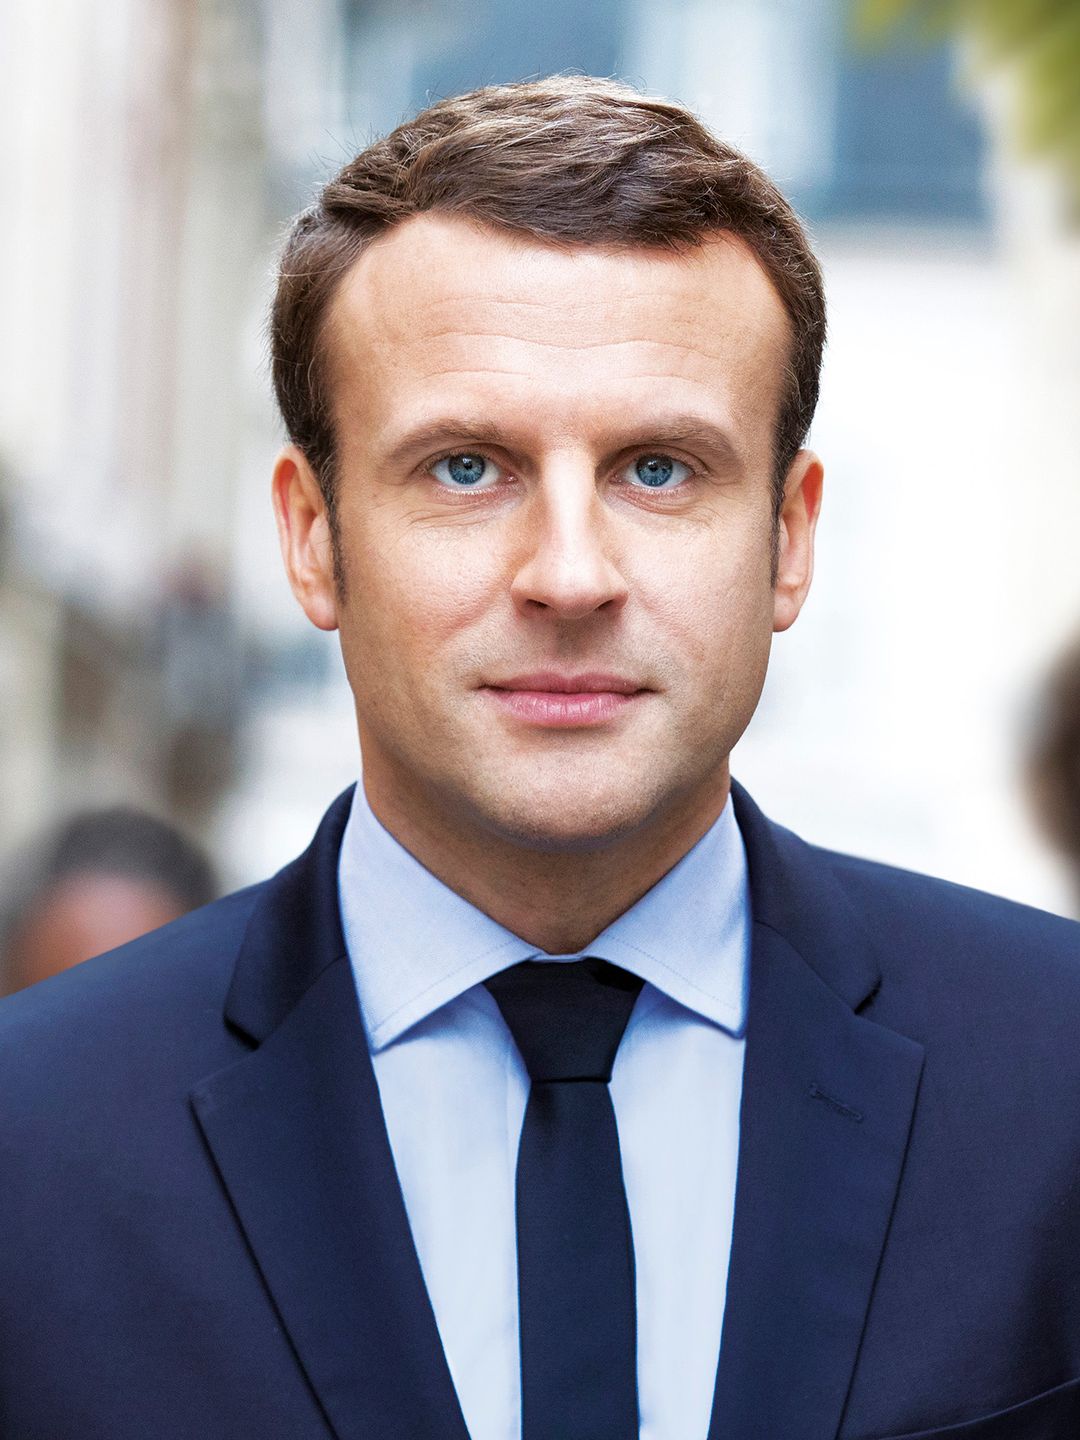 Emmanuel Macron main achievements